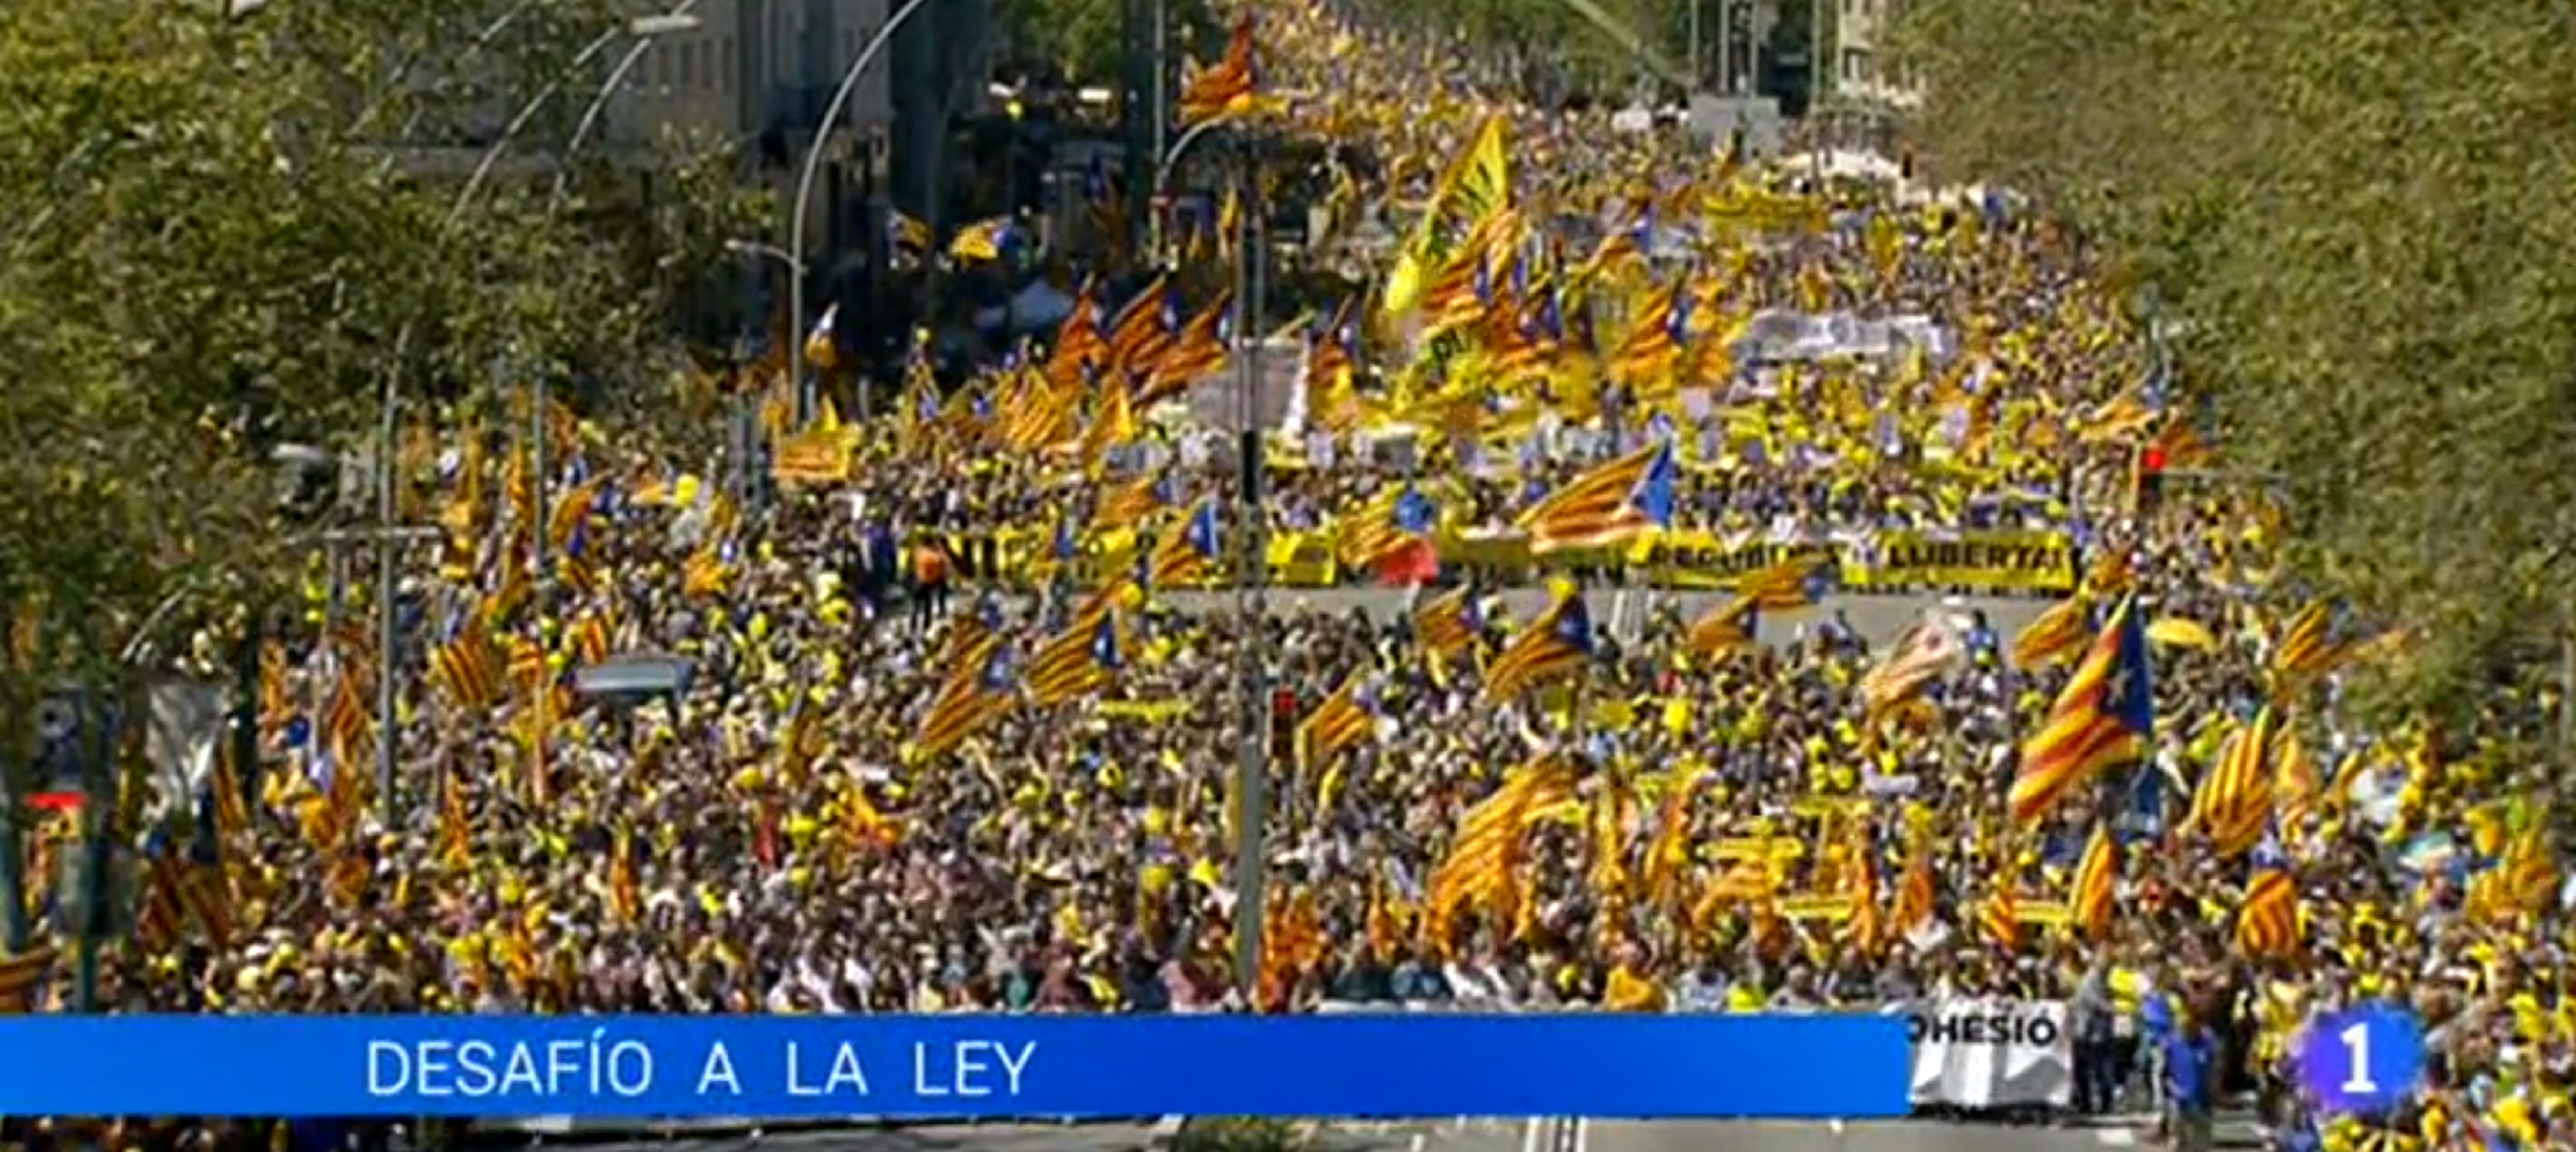 TVE relega la manifestación en Catalunya y la llama "Desafío a la ley"